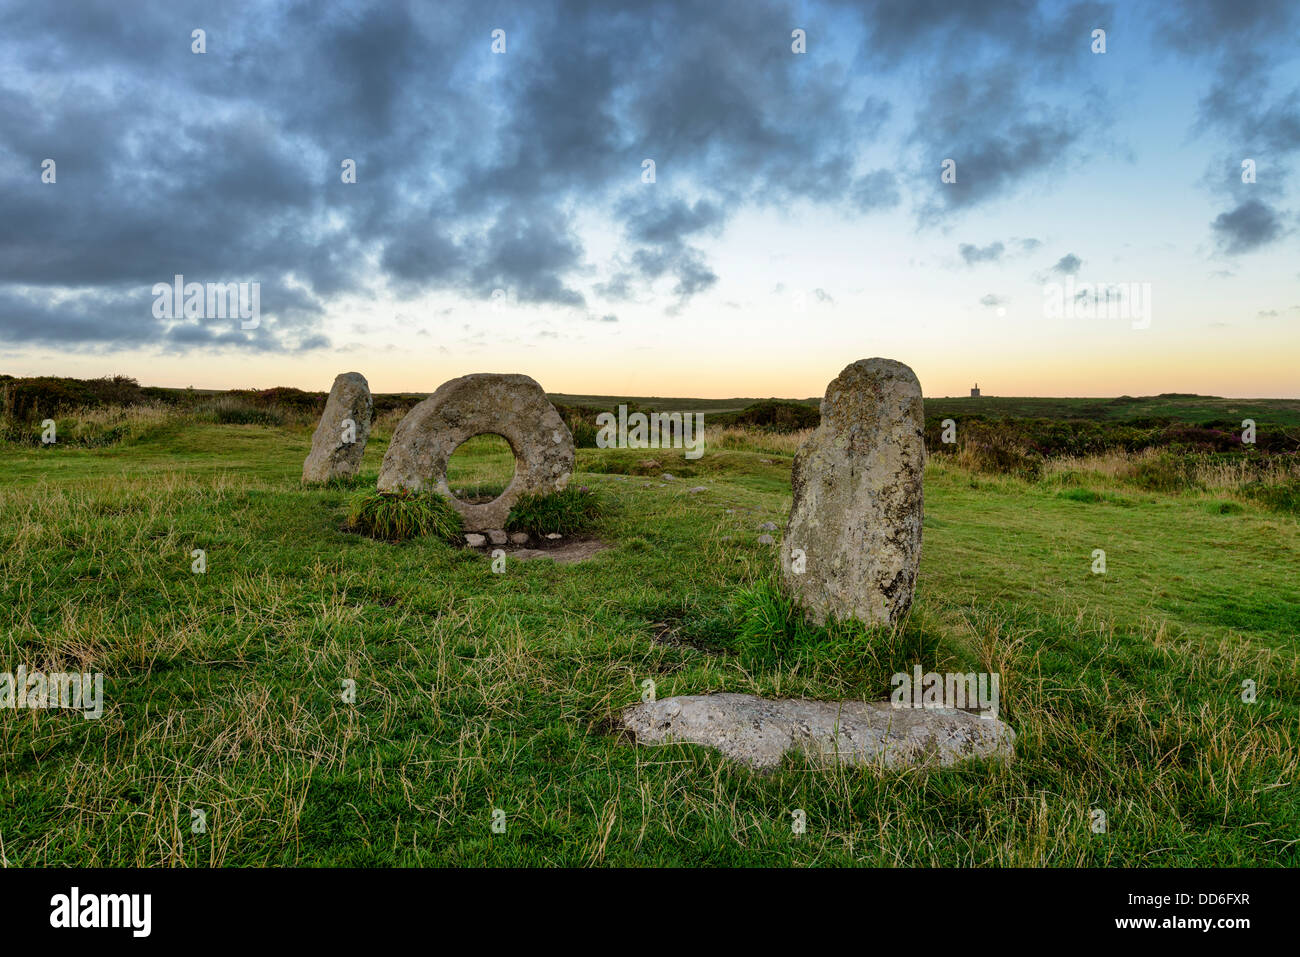 Die Männer ein Tol Menhire sagt in der Nähe von Penzance in Cornwall, Legende, vorbei an einer Person durch die gelochte Stein Kuren Stockfoto